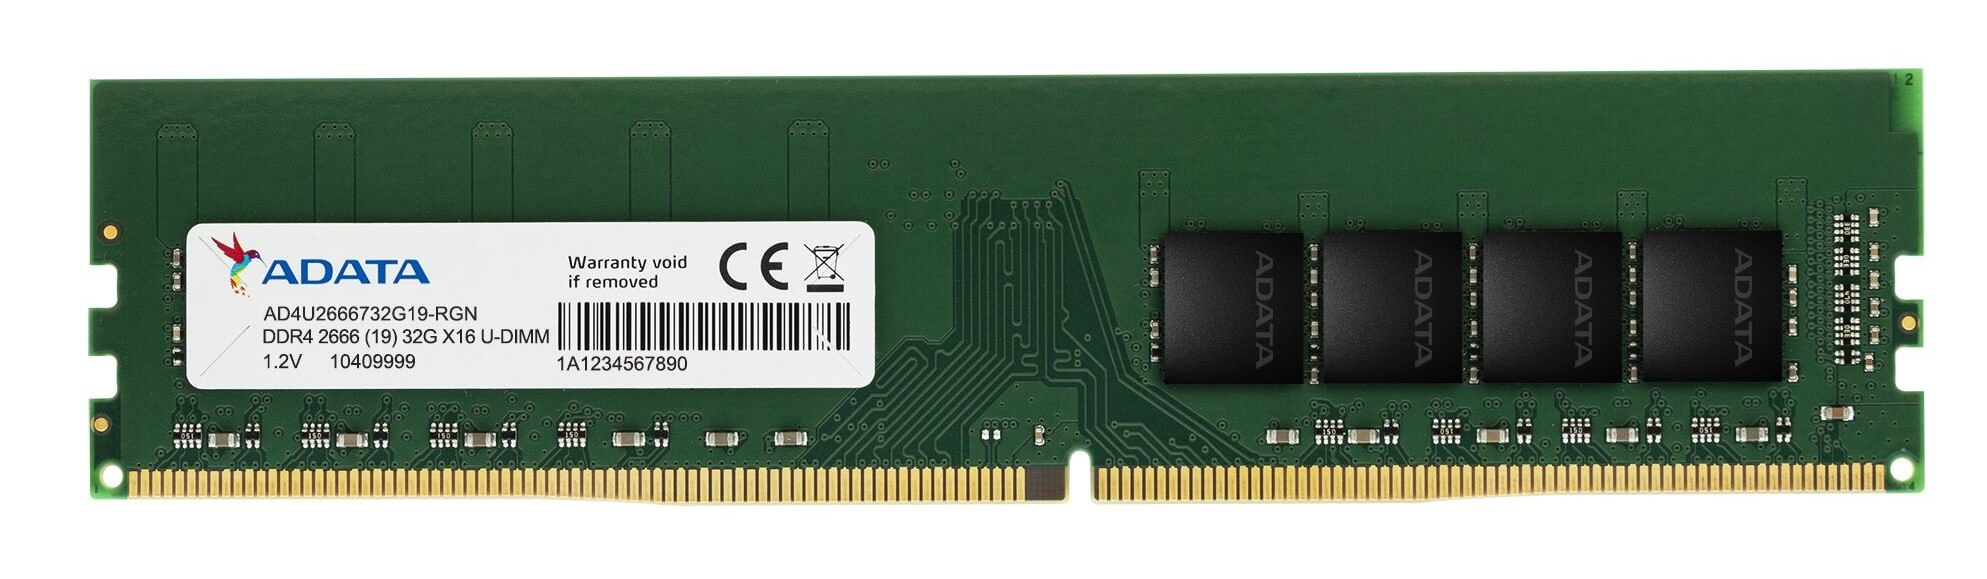 ADATA y XPG DDR4